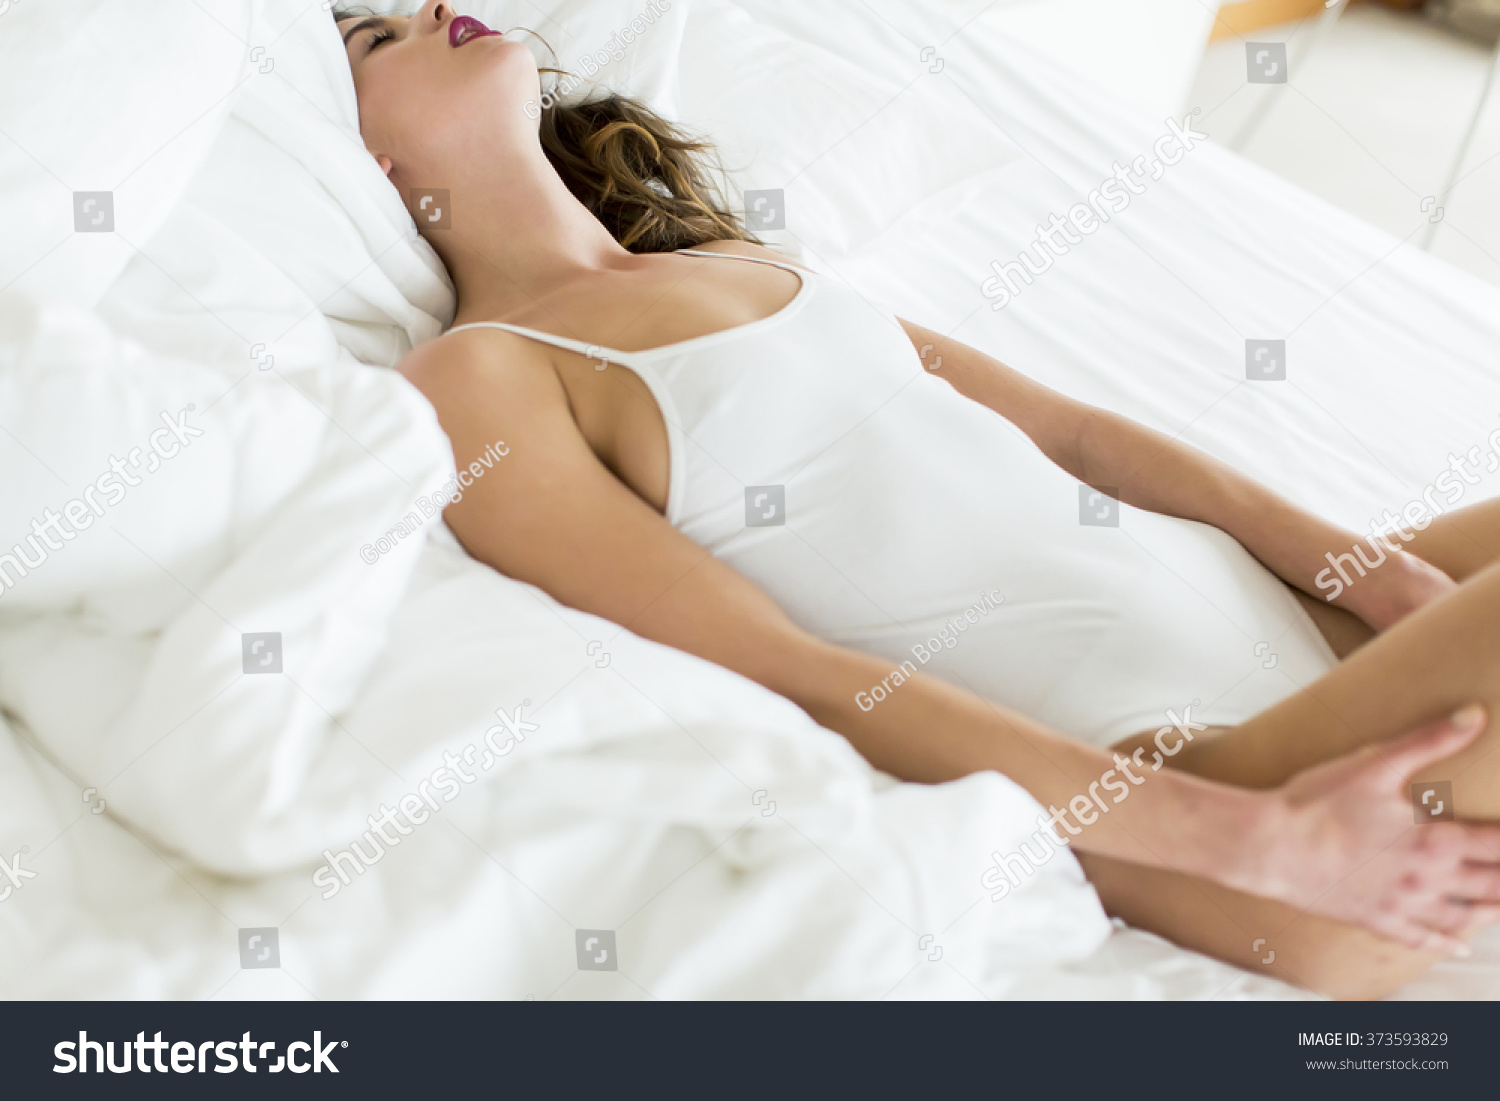 Фото большого влагалища женщины на постели